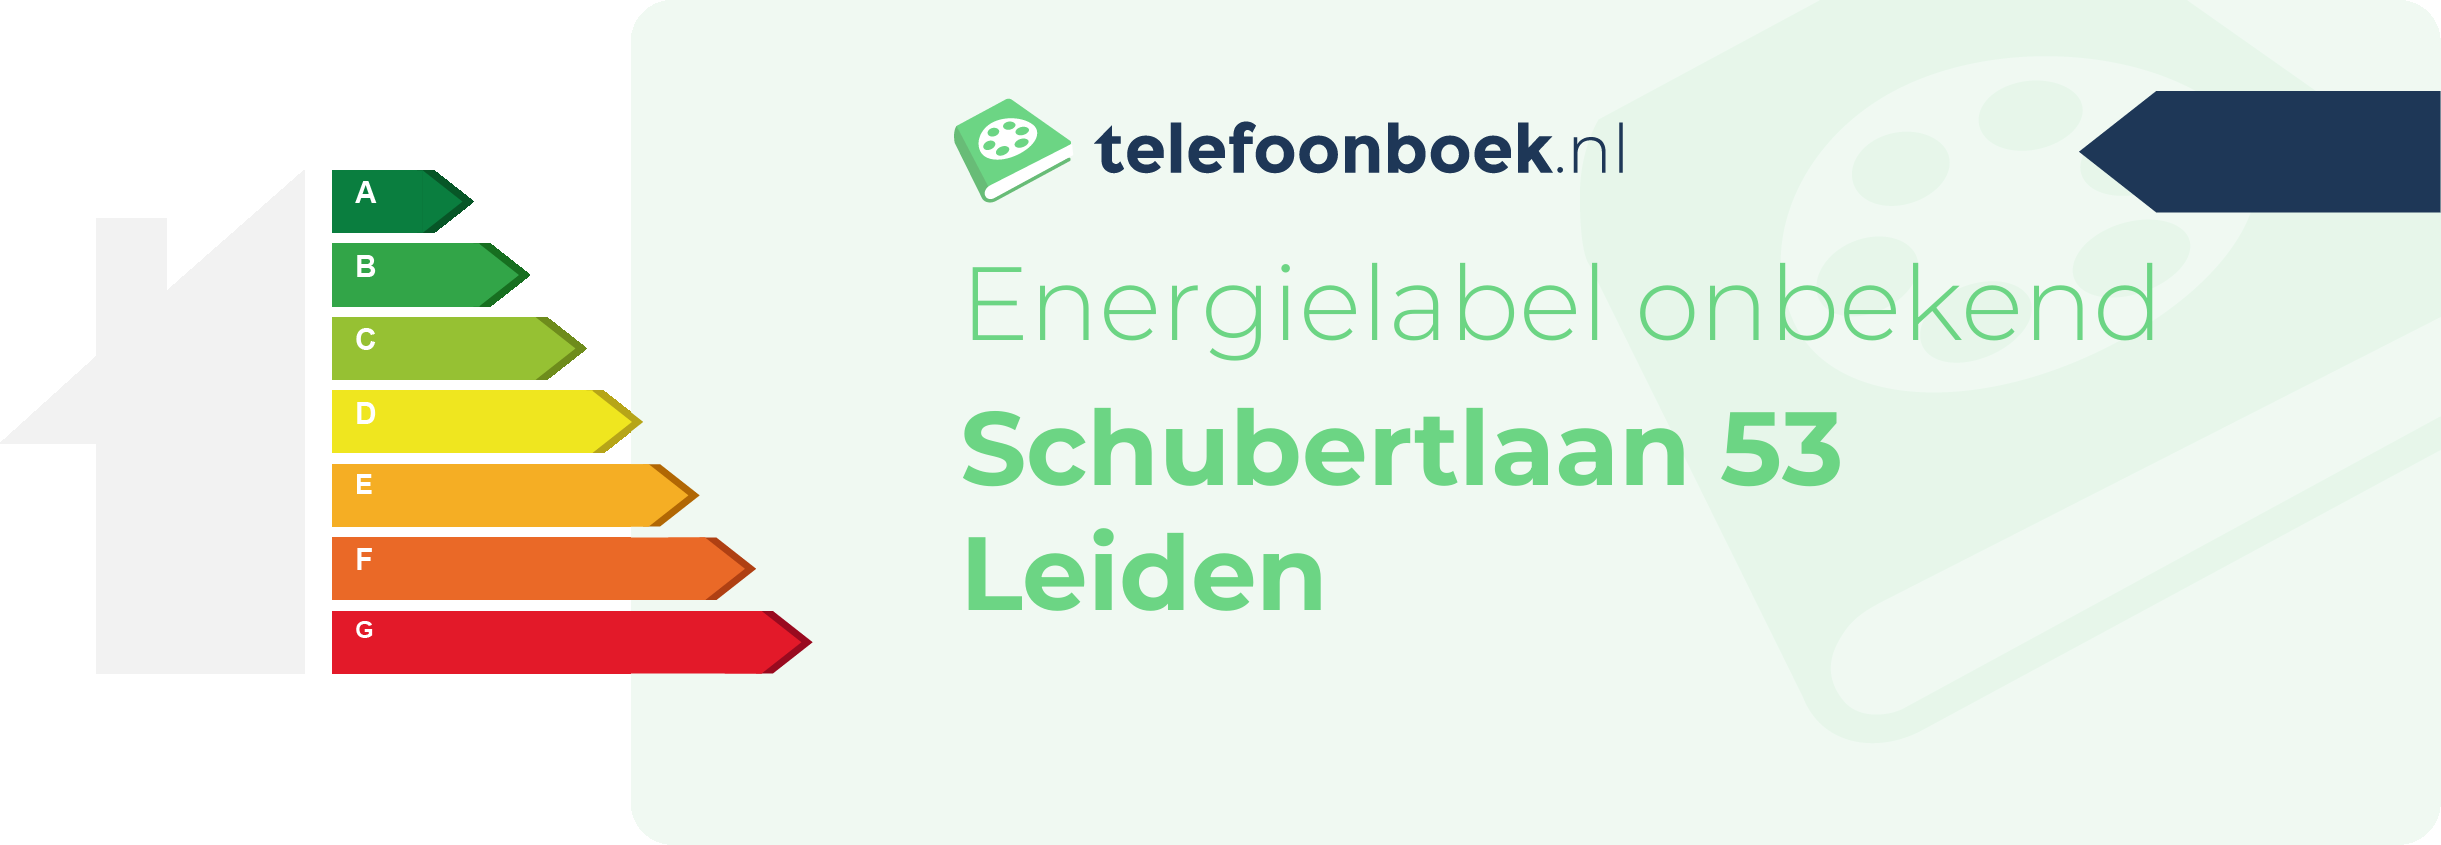 Energielabel Schubertlaan 53 Leiden